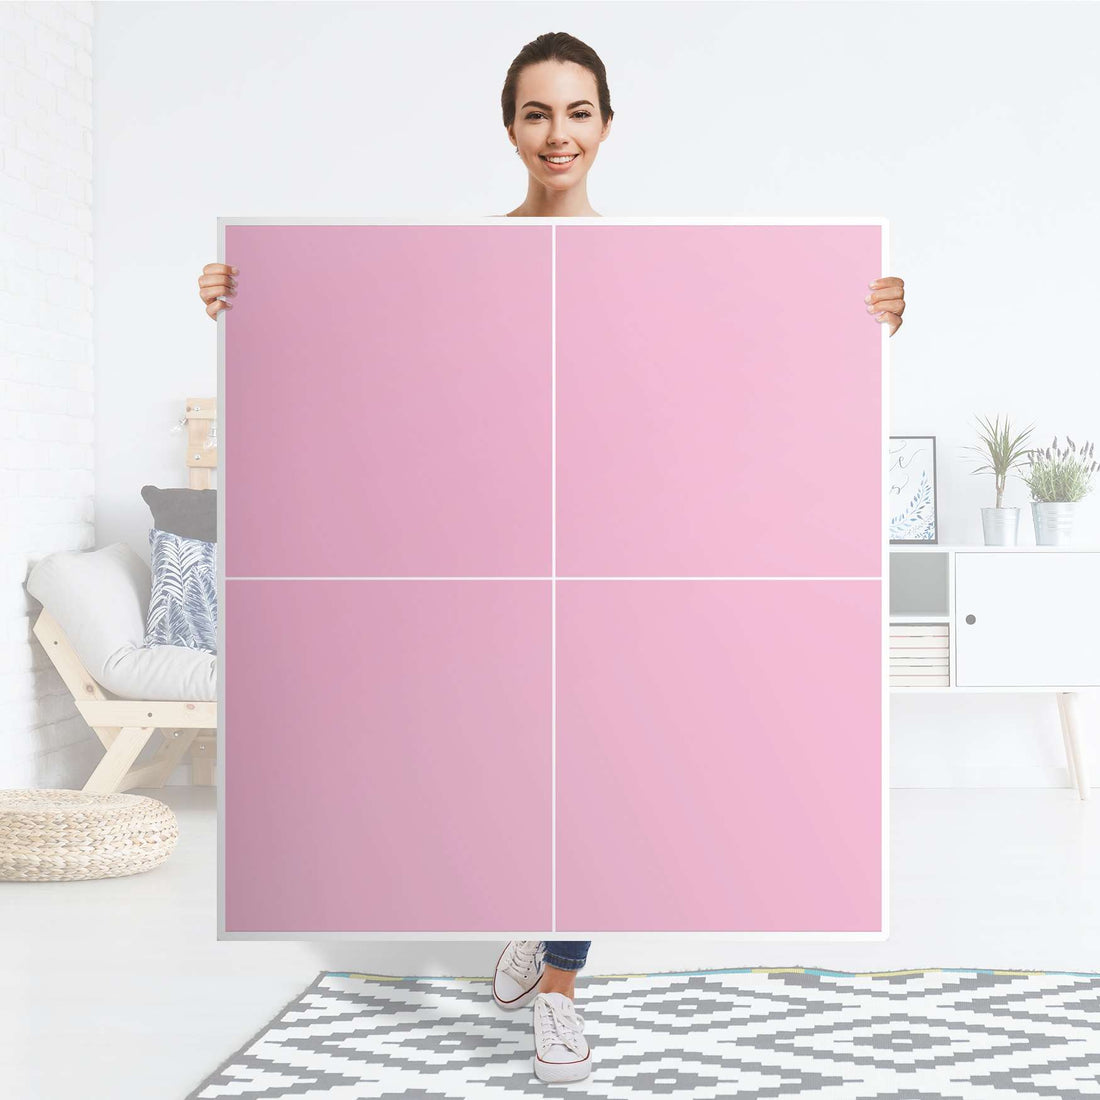 Klebefolie für Schränke Pink Light - IKEA Besta Schrank Quadratisch 4 Türen - Folie